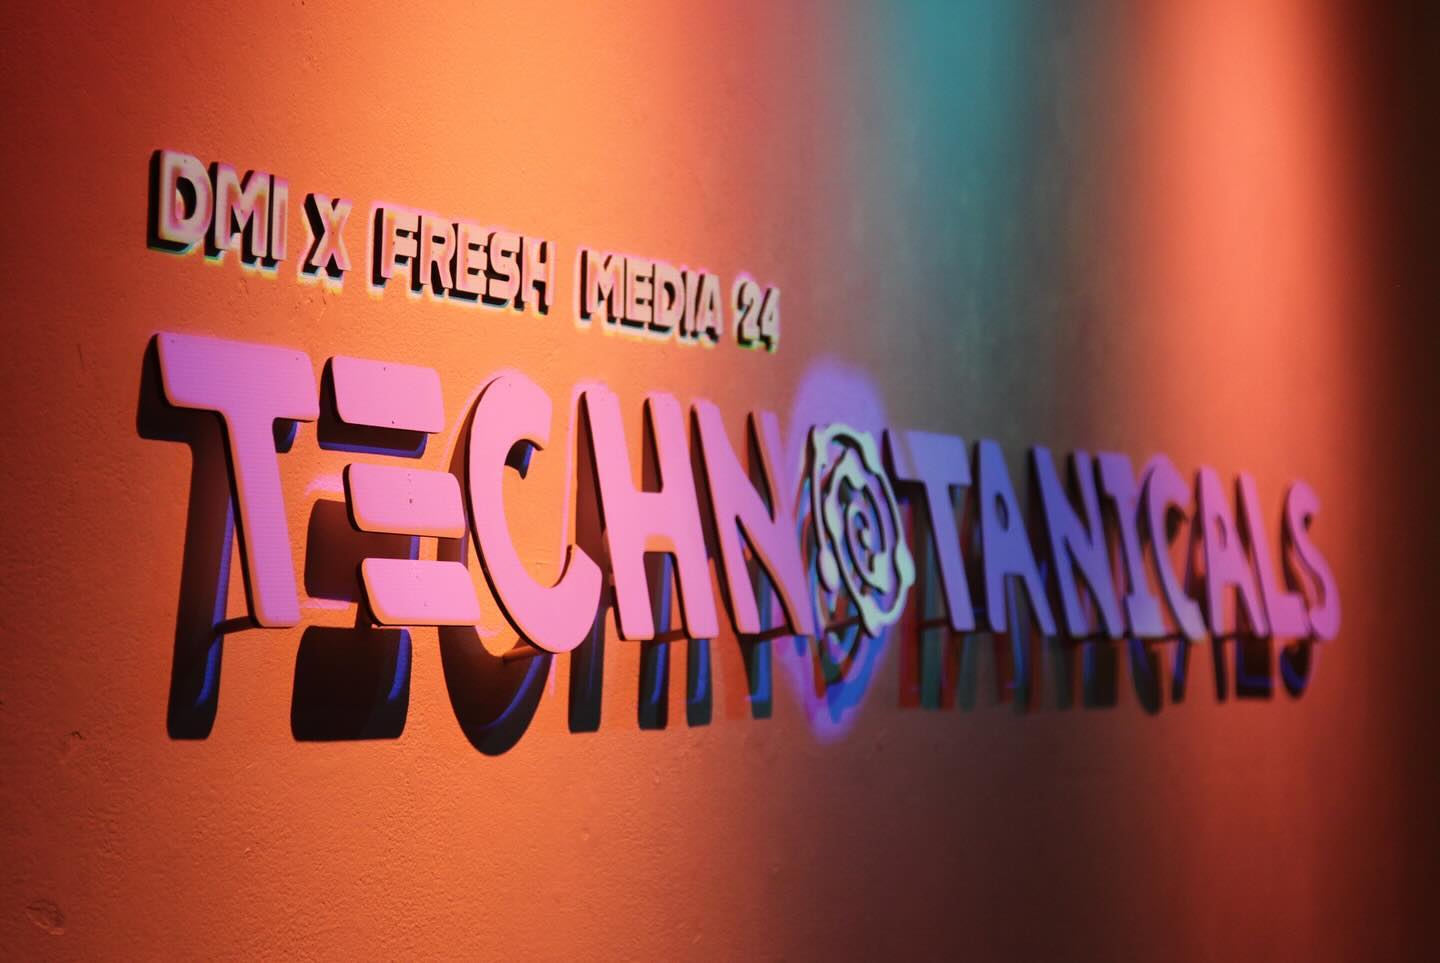 Sign on an orange wall that says DMI x FreshMedia Technotanicals